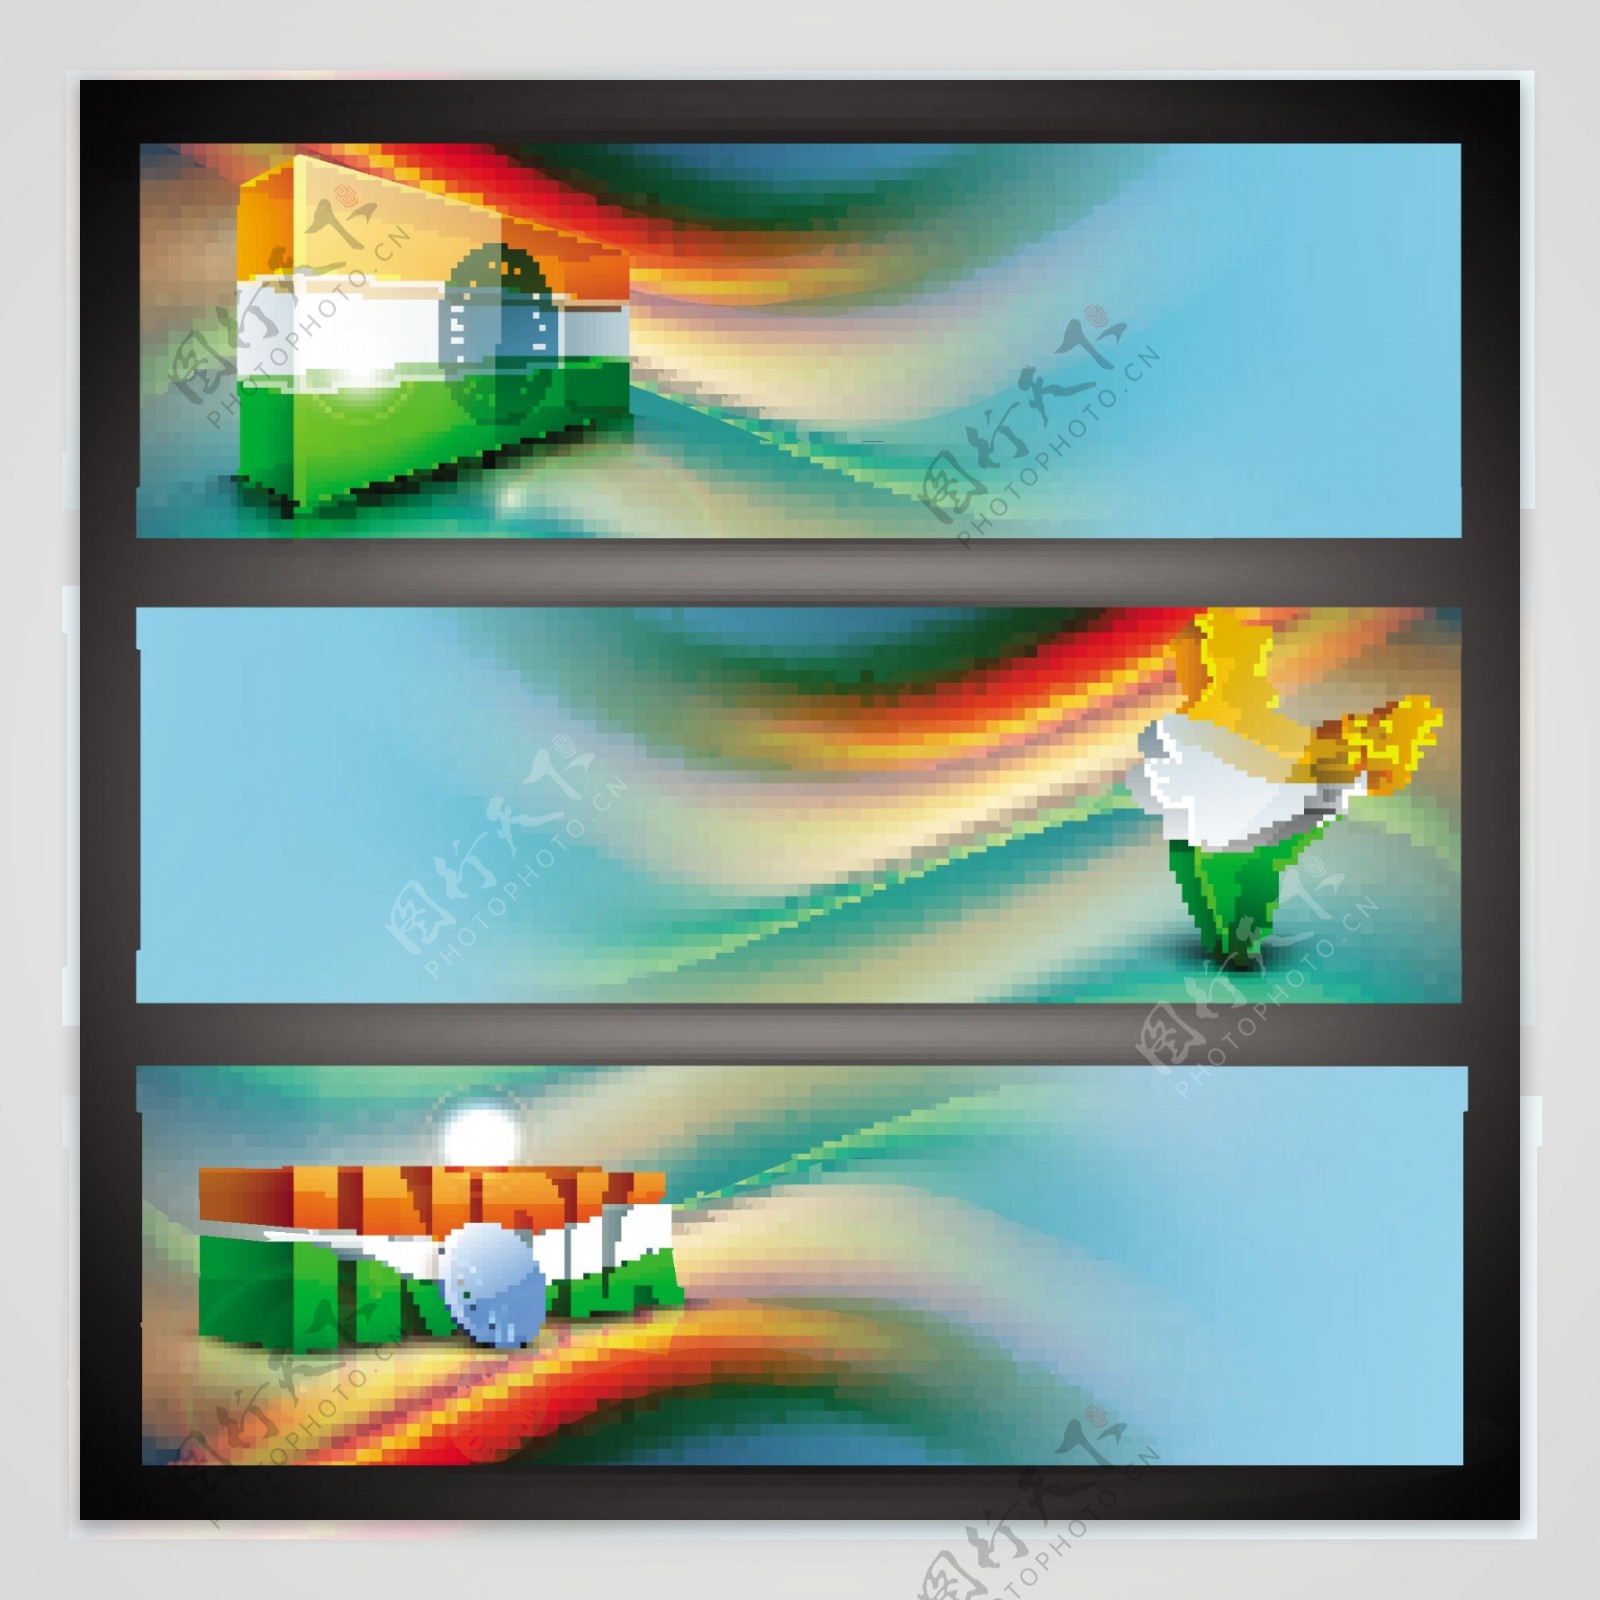 印度国旗的创意设计